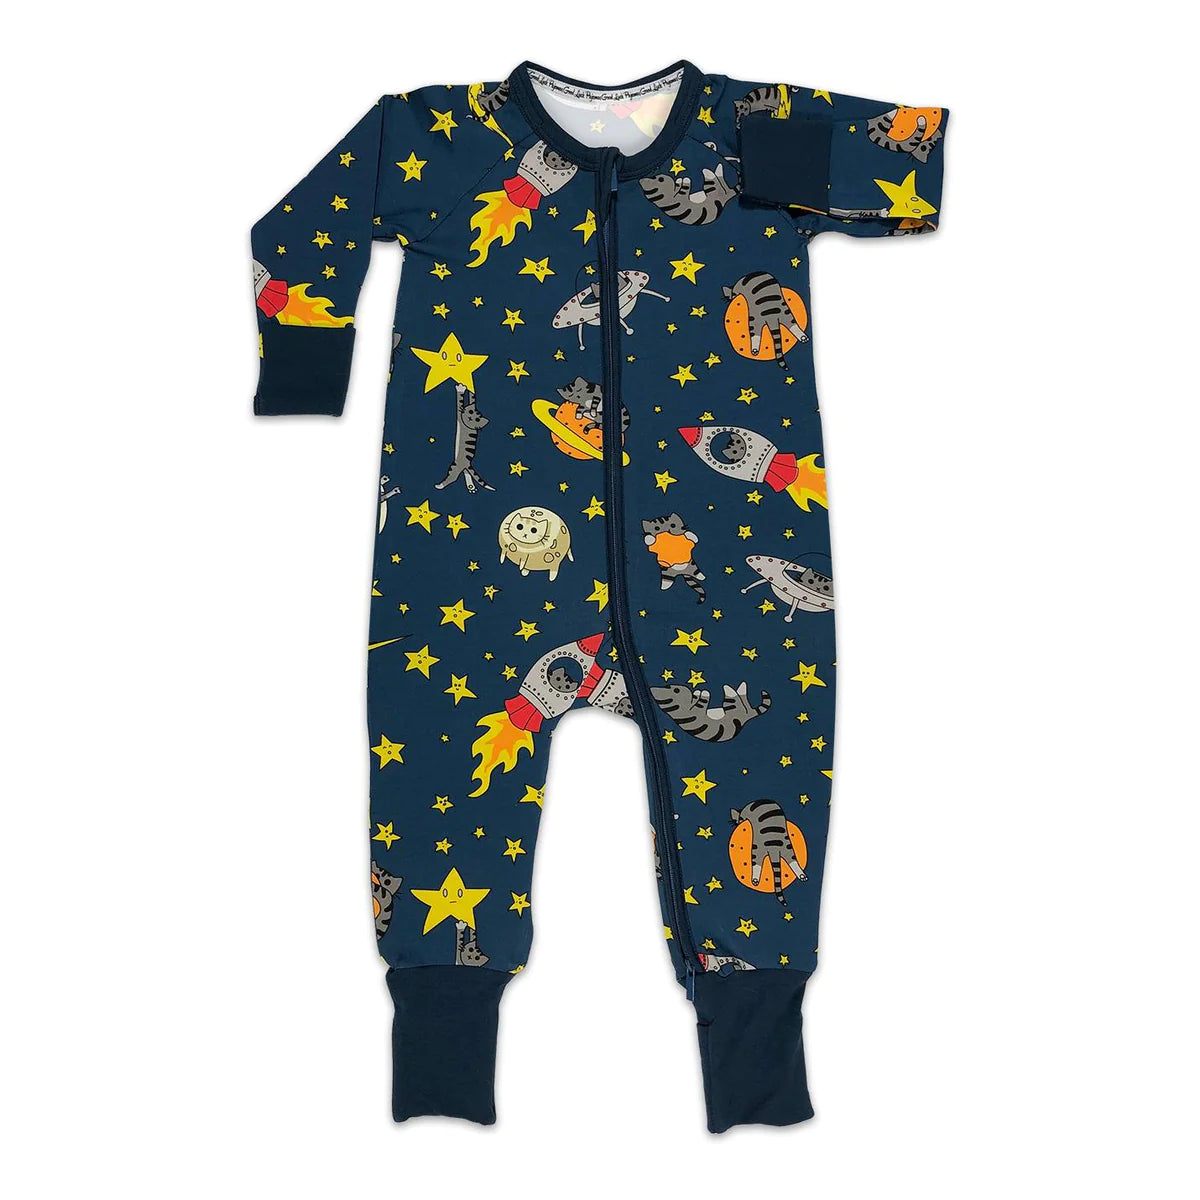 Space Cats Baby Pyjamas